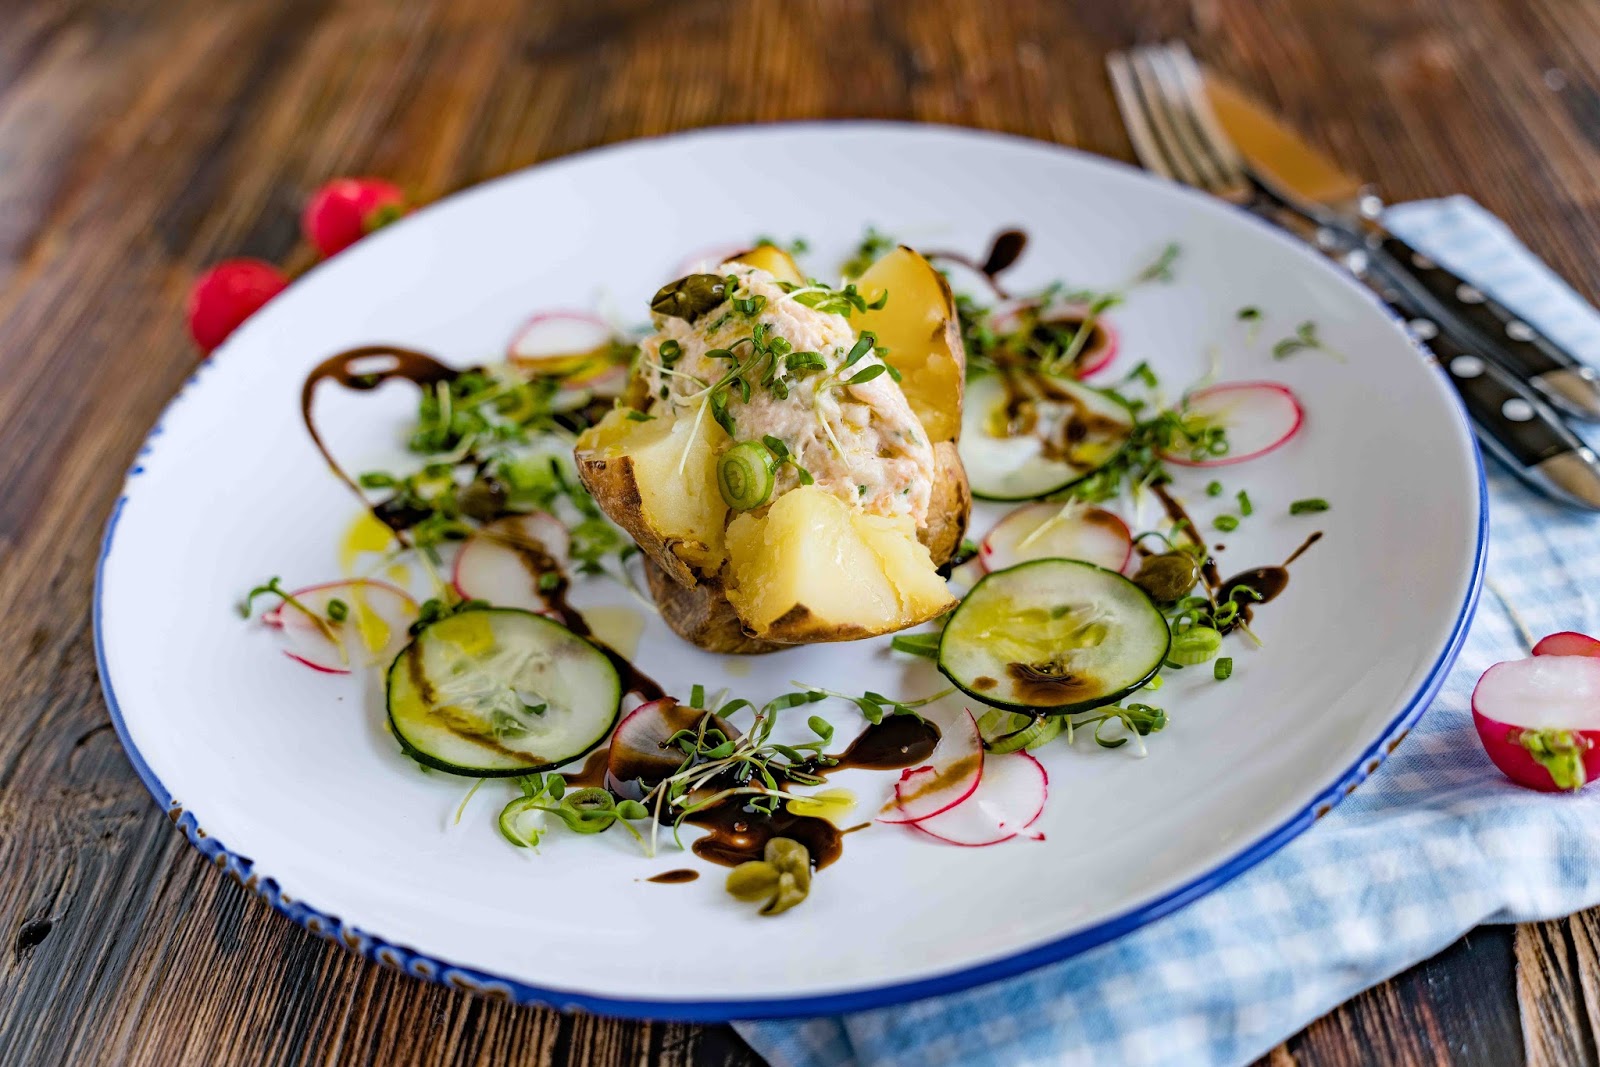 stuttgartcooking: Gebackene Kartoffel mit Lachs-Rillette und Salat ...